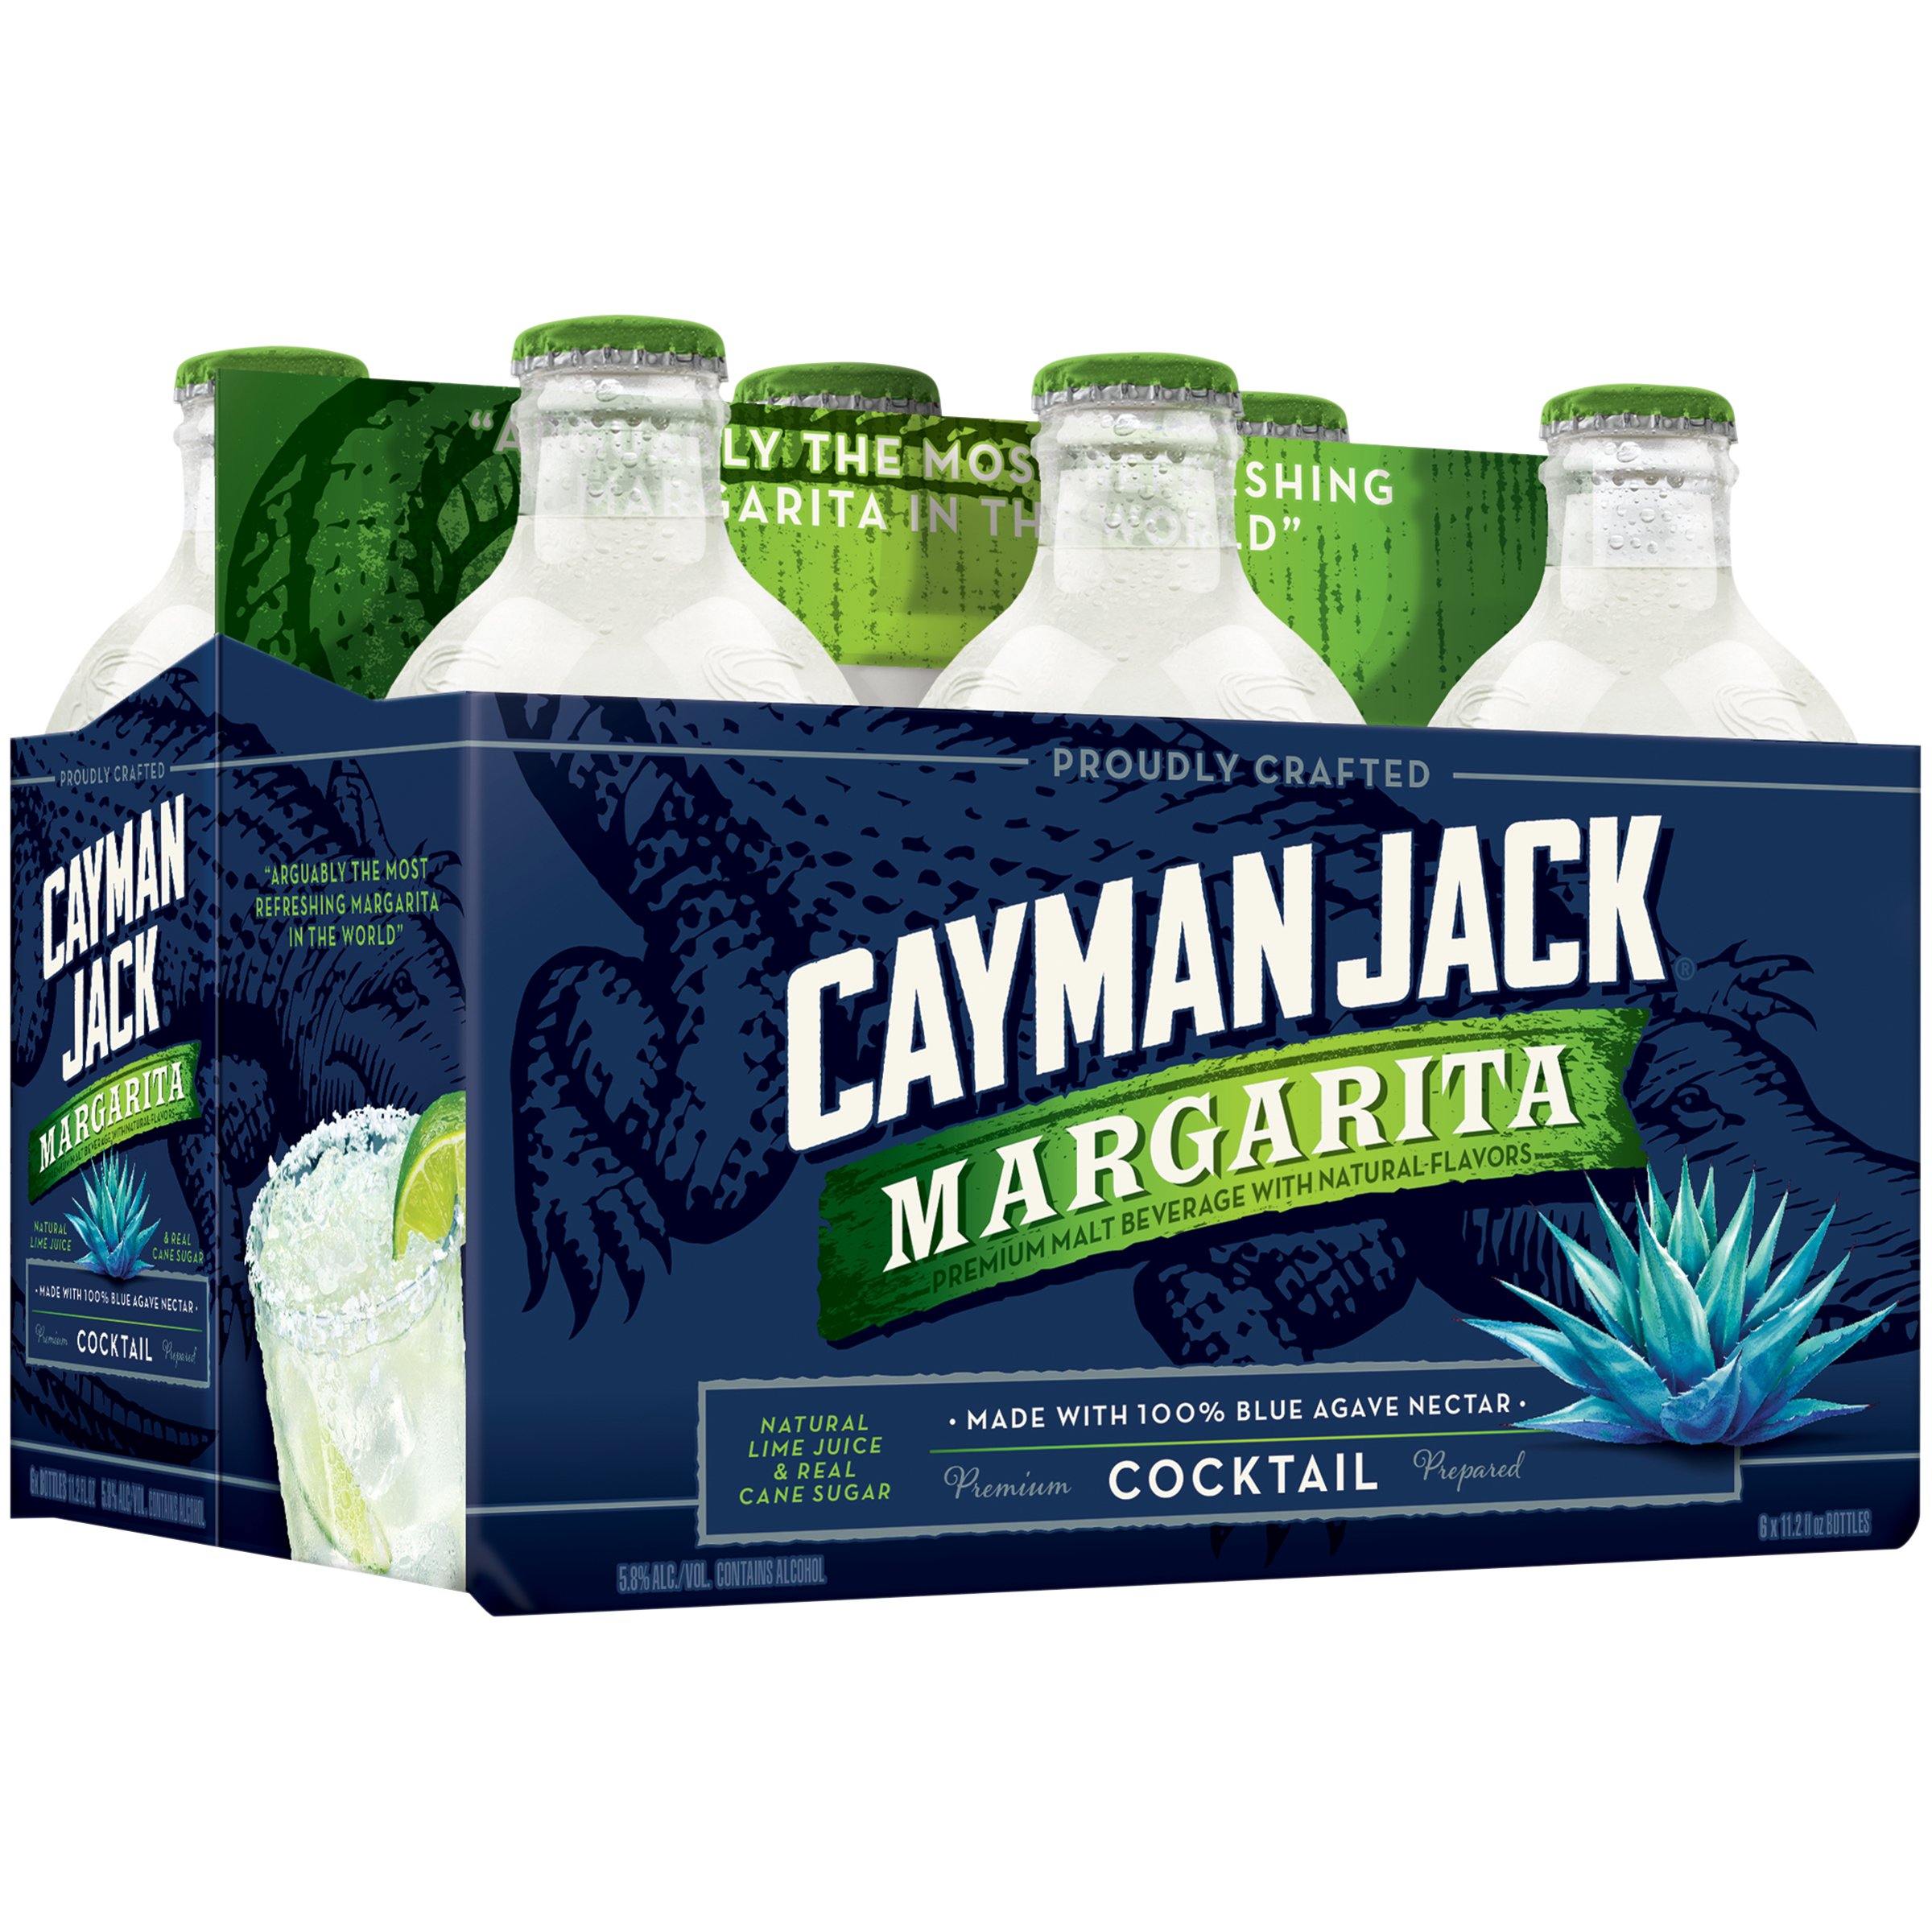 Cayman Jack Margarita 11.2 oz Bottles - Shop Malt Beverages & Coolers at H-E-B